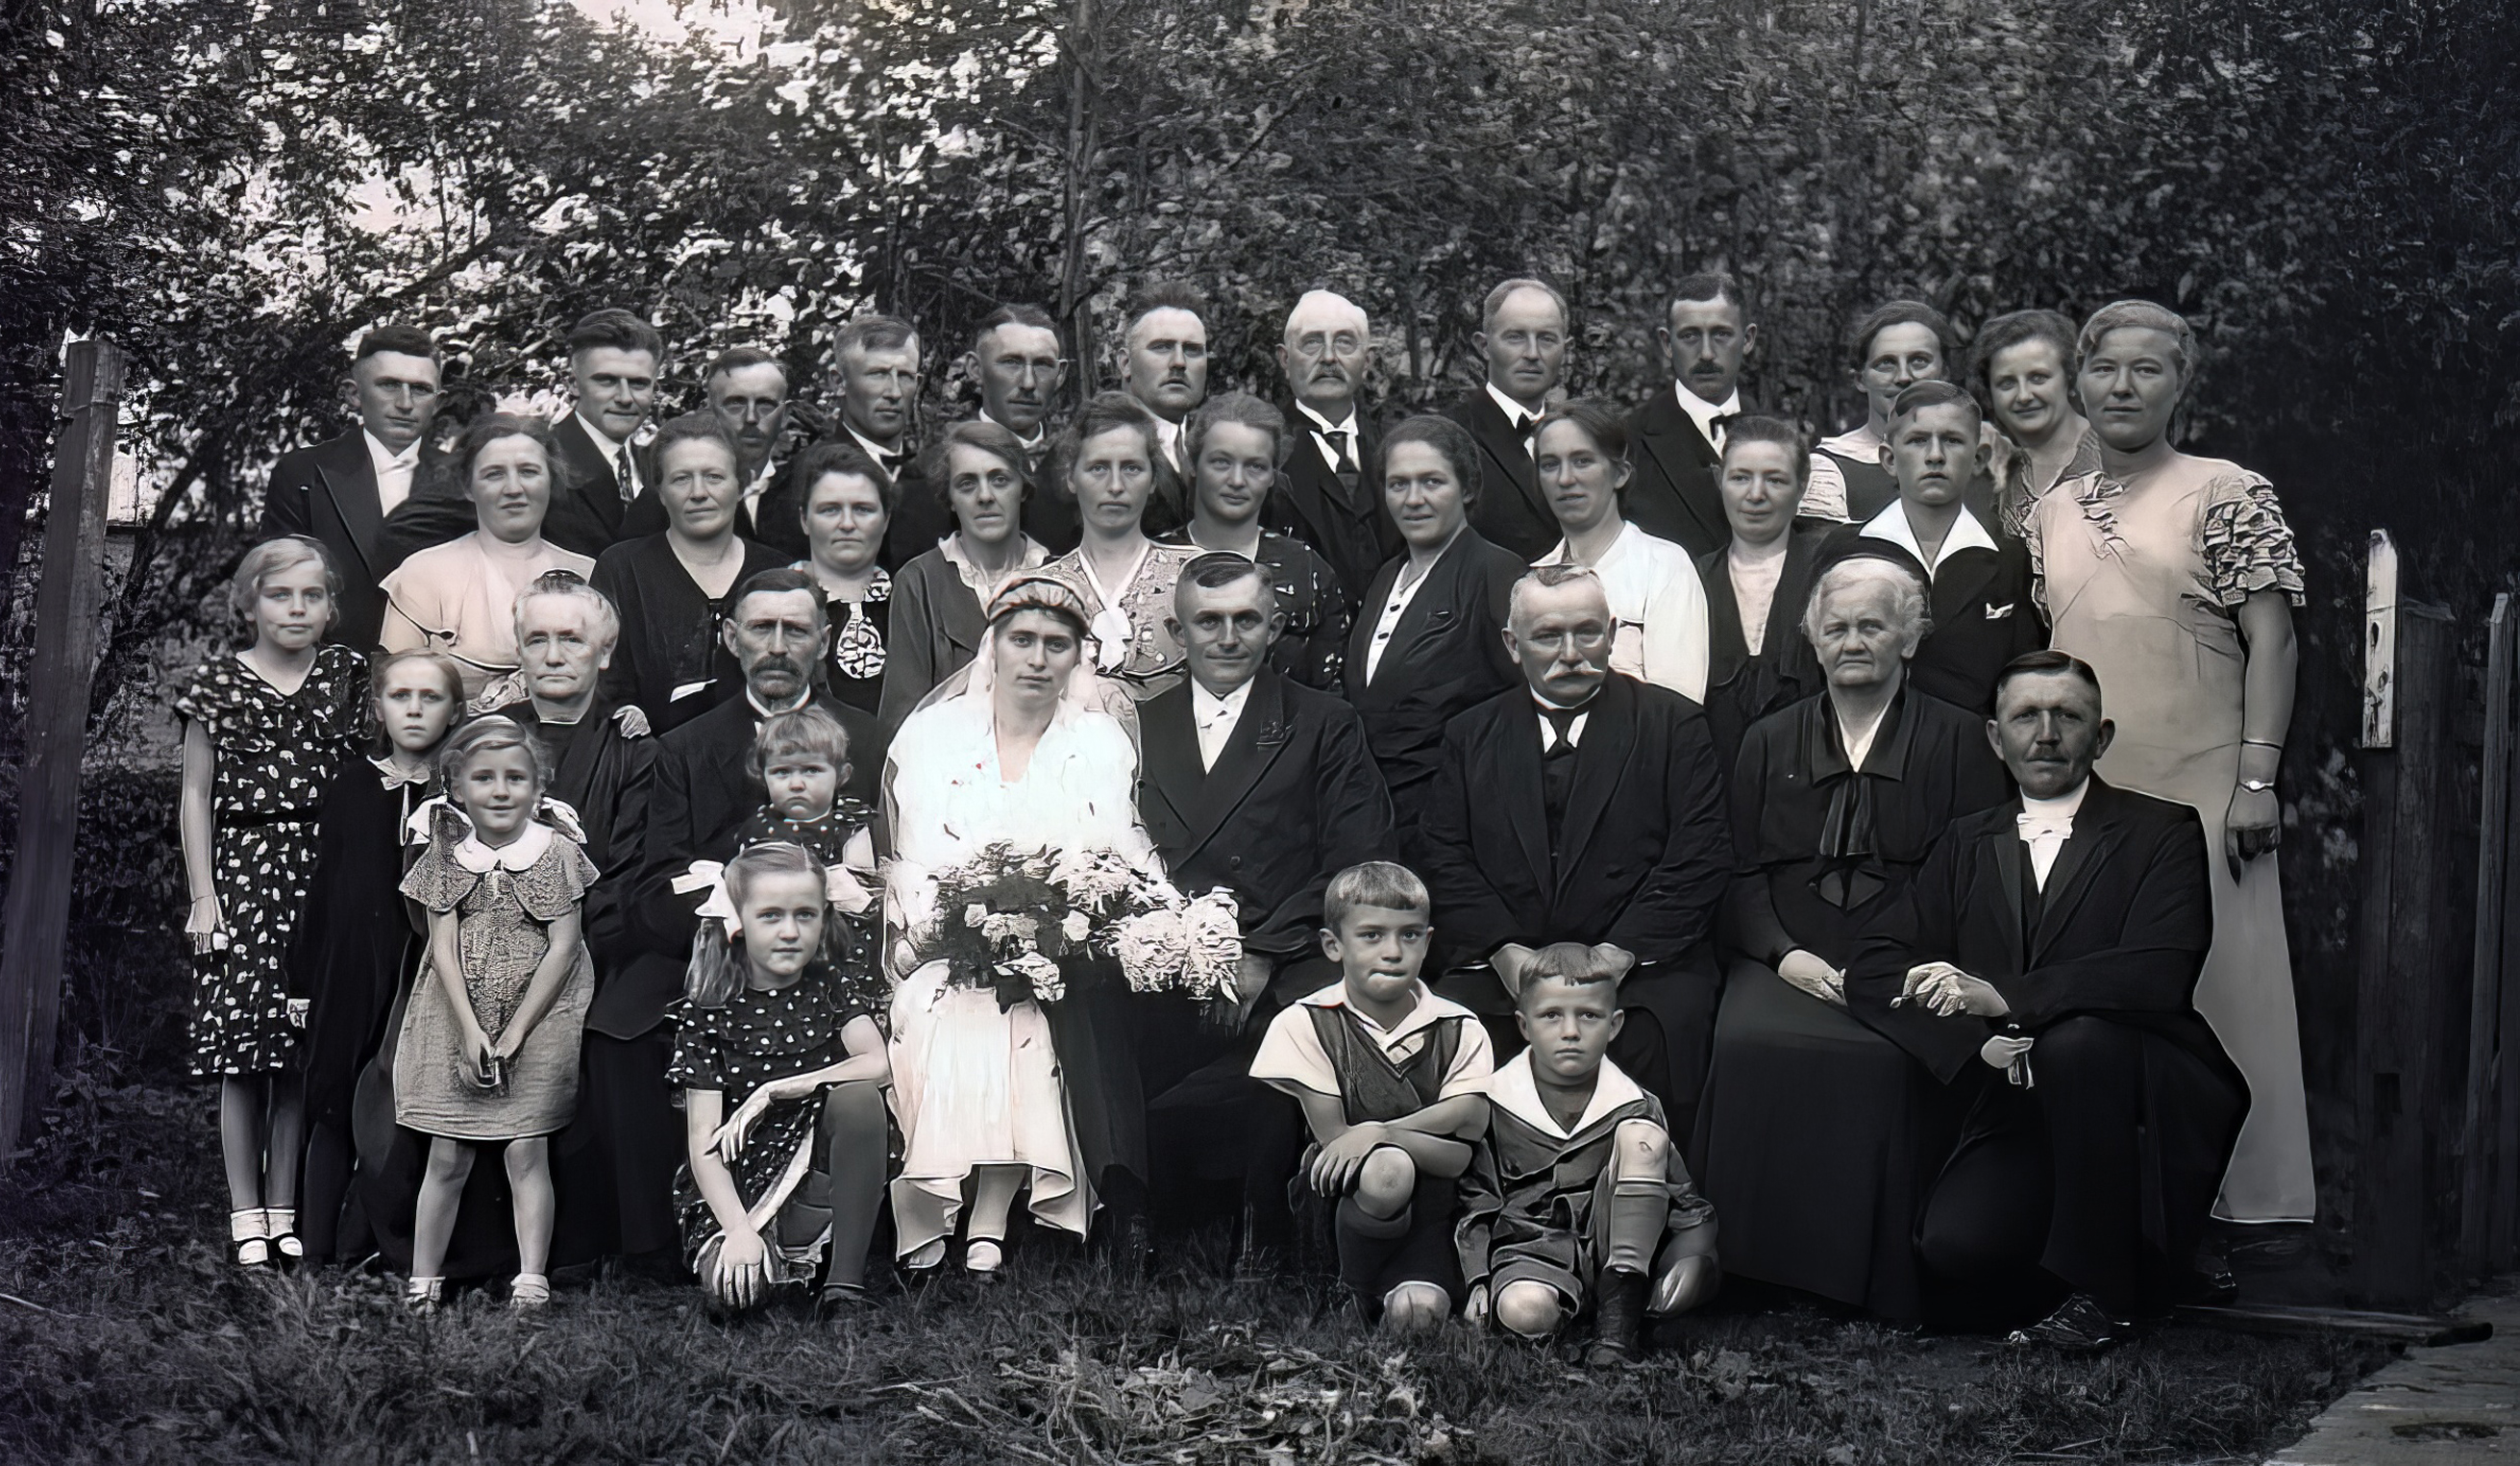 Politz-Petersen marriage in Dithmarschen, 1934